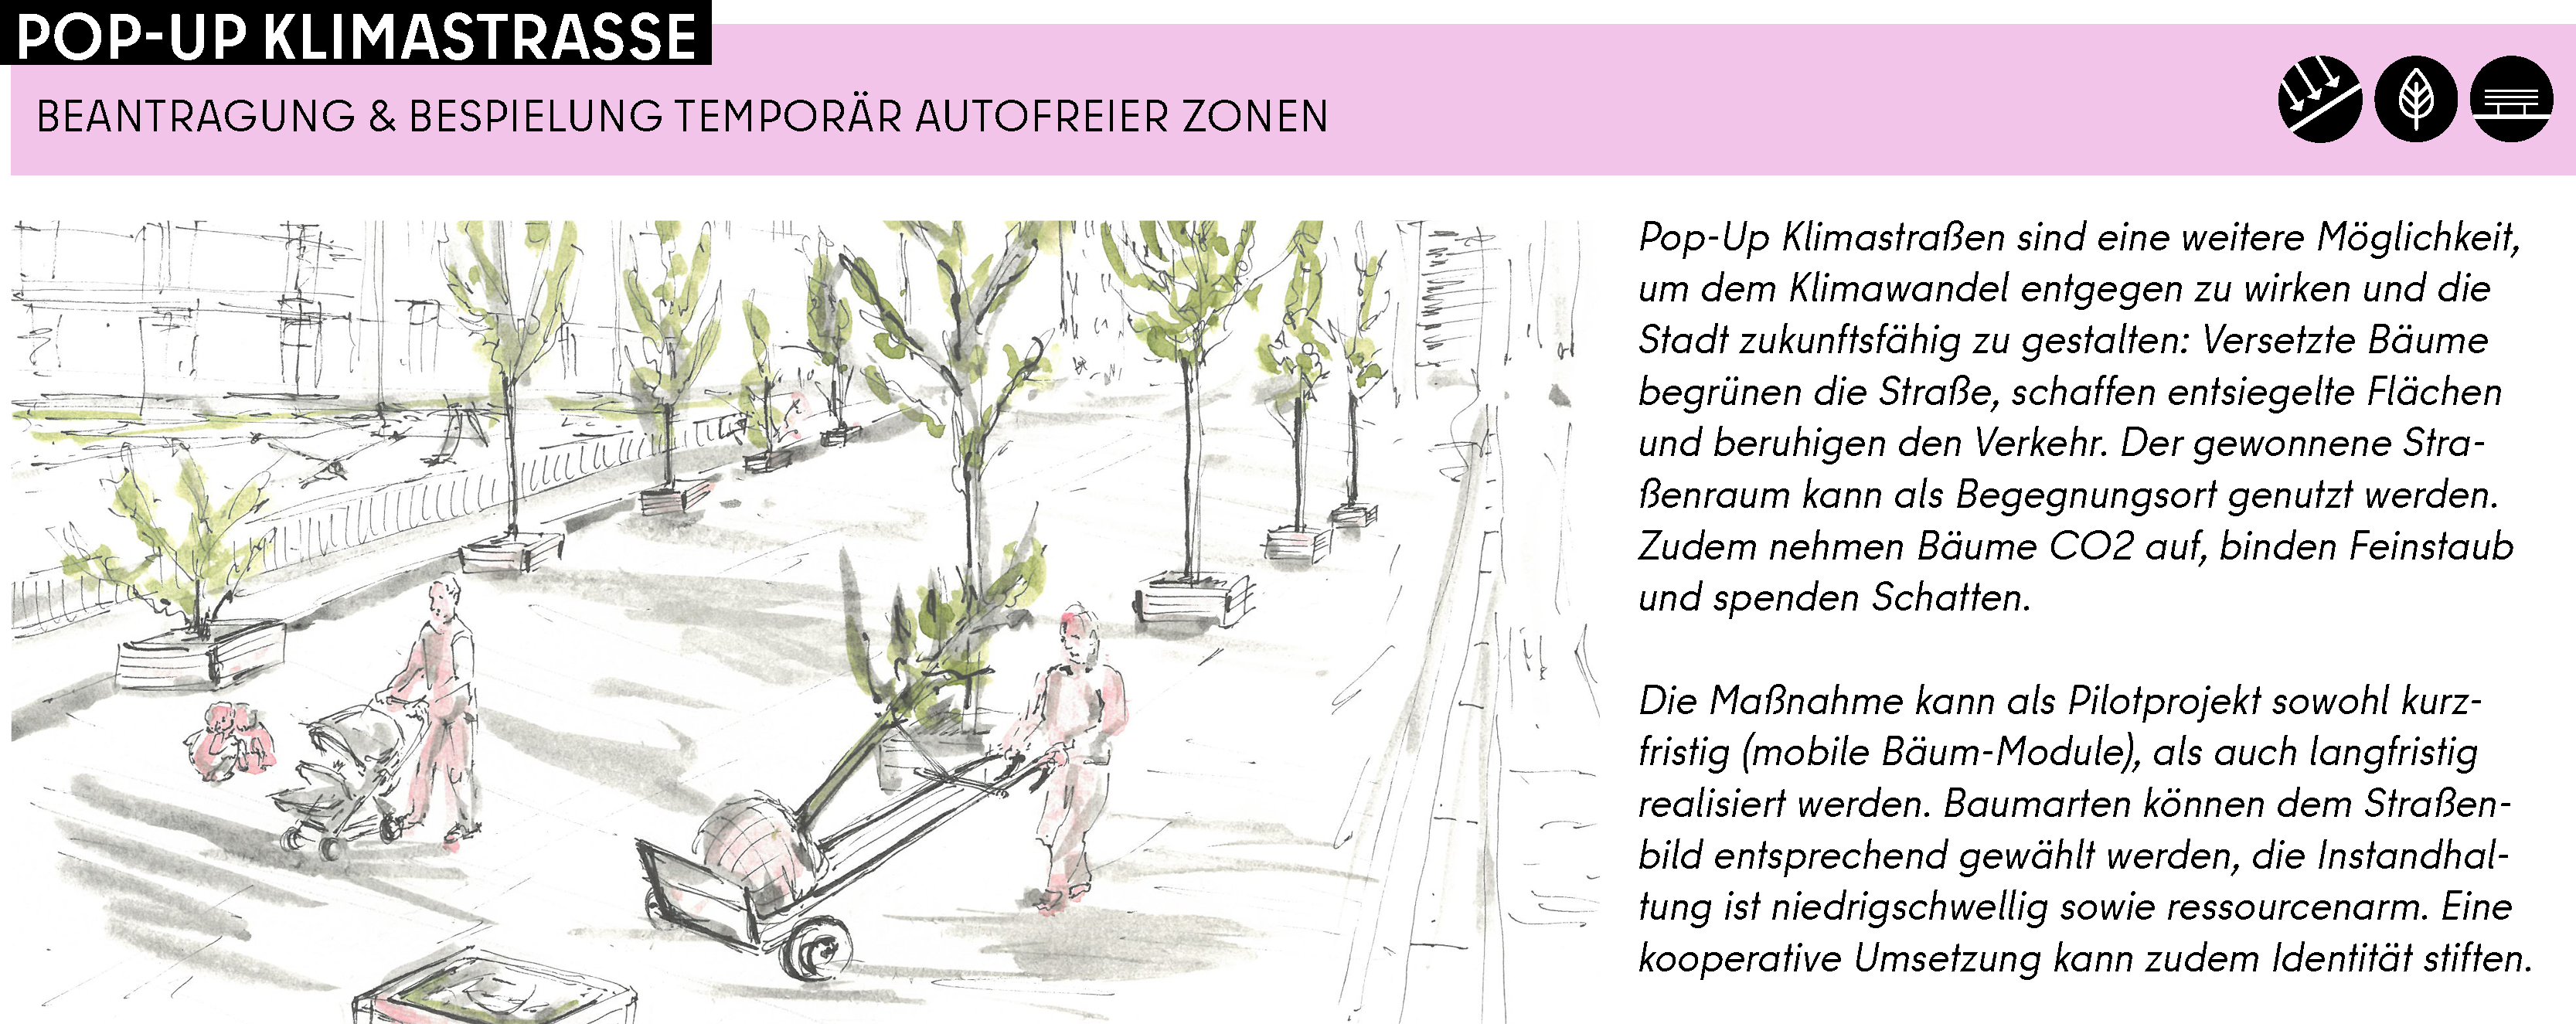 Pop-Up Klimastraßen sind eine weitere Möglichkeit, um dem Klimawandel entgegen zu wirken und die Stadt zukunftsfähig zu gestalten: Versetzte Bäume begrünen die Straße, schaffen entsiegelte Flächen und beruhigen den Verkehr. Der gewonnene Straßenraum kann als Begegnungsort genutzt werden. Zudem nehmen Bäume CO2 auf, binden Feinstaub und spenden Schatten.   Die Maßnahme kann als Pilotprojekt sowohl kurzfristig (mobile Bäum-Module), als auch langfristig realisiert werden. Baumarten können dem Straßenbild entsprechend gewählt werden, die Instandhaltung ist niedrigschwellig sowie ressourcenarm. Eine kooperative Umsetzung kann zudem Identität stiften.